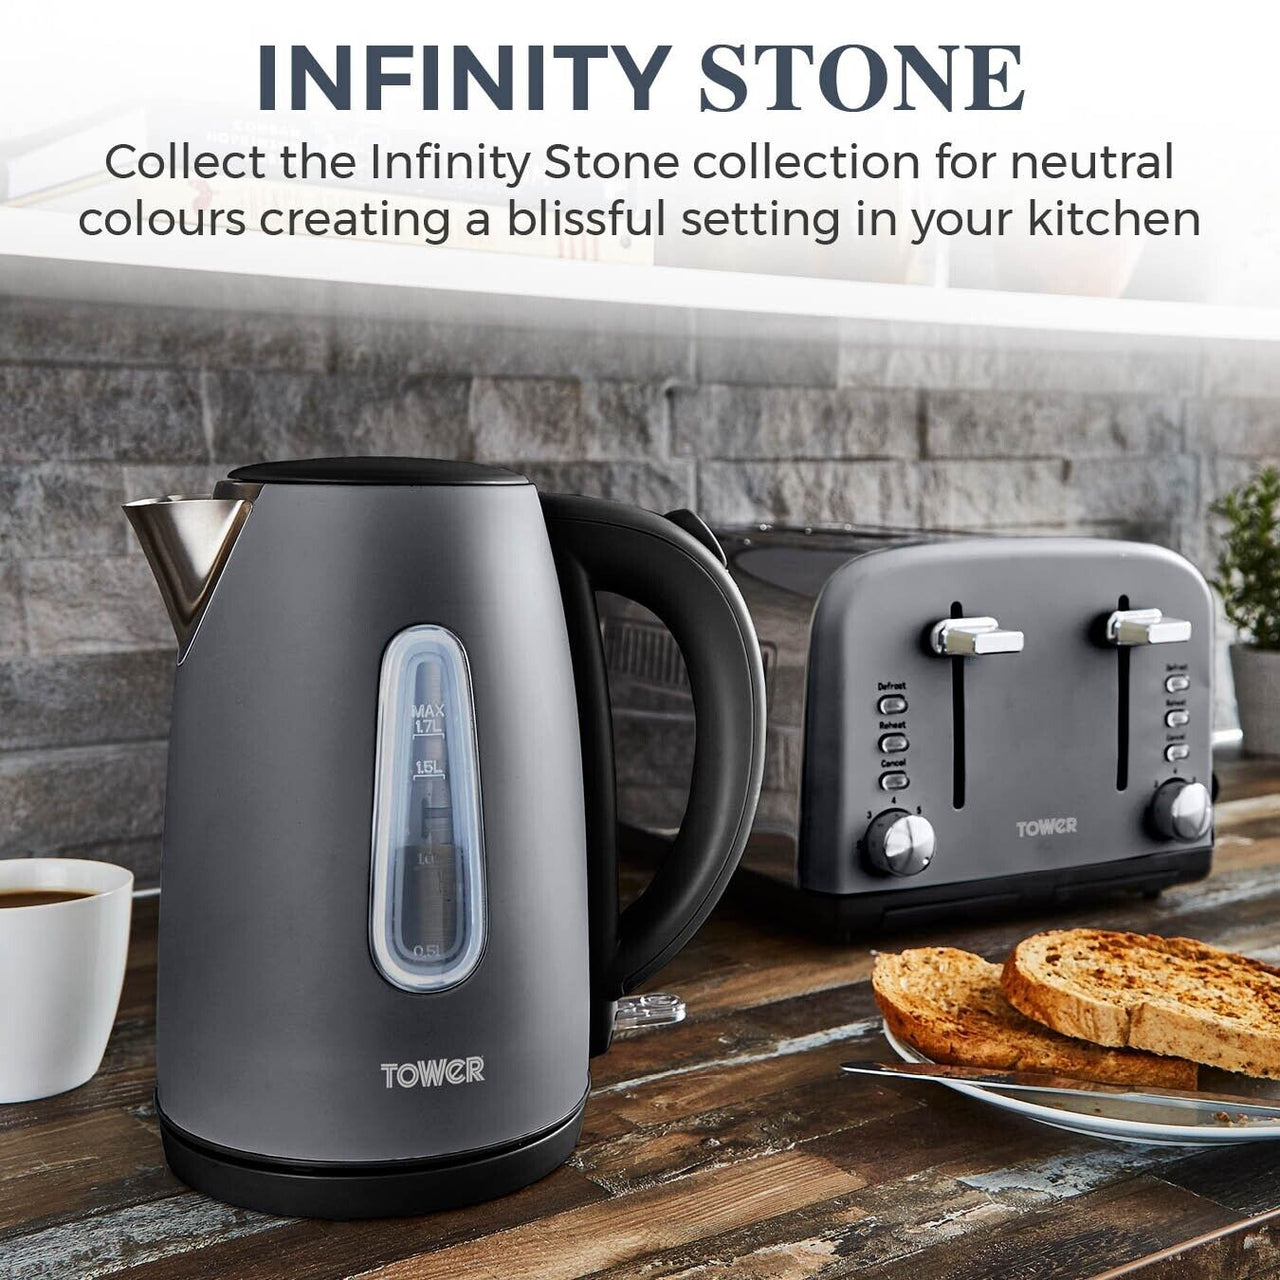 Tower Infinity Kettle 4 Slice Toaster & Bread Bin Kitchen Set in Slate Grey